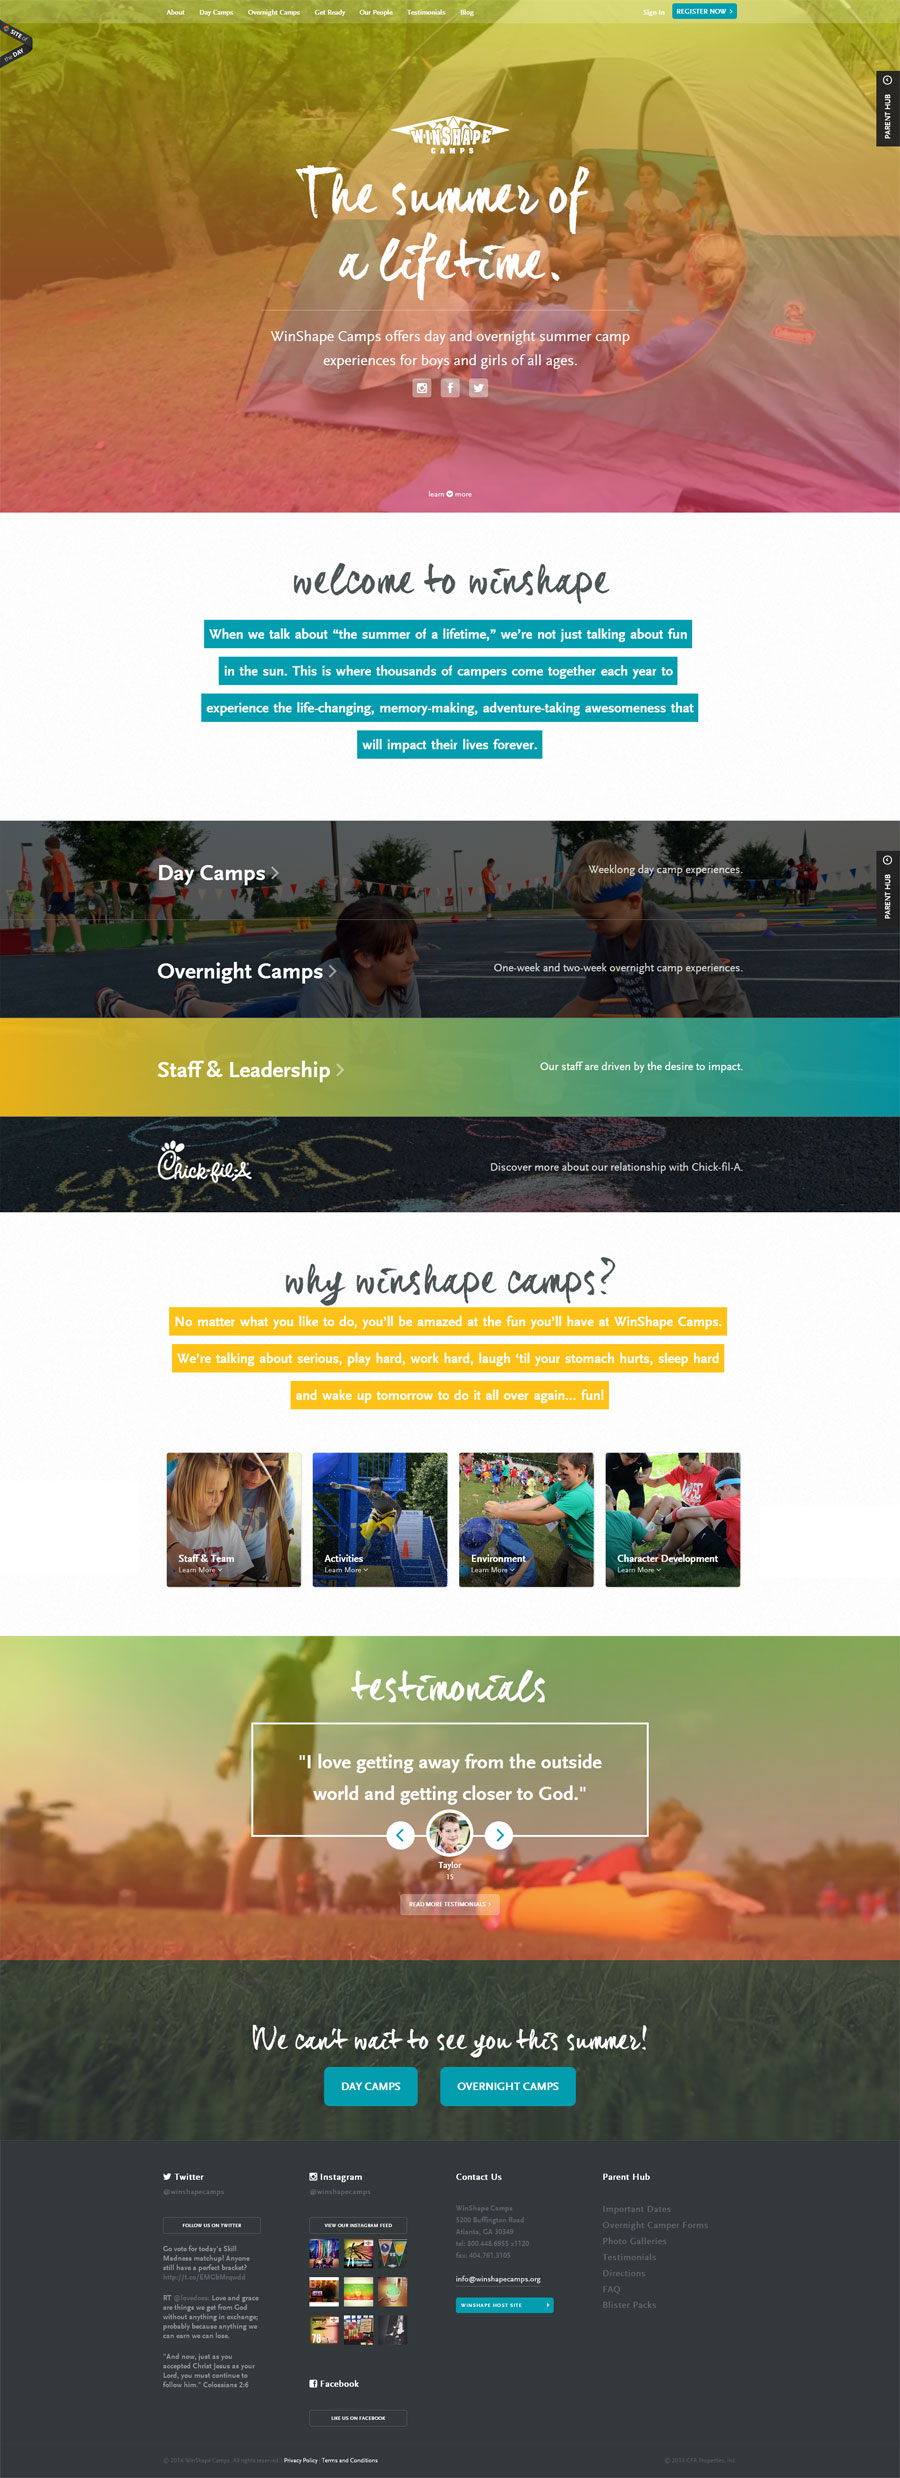 WinShape Camps - Inspiración web design